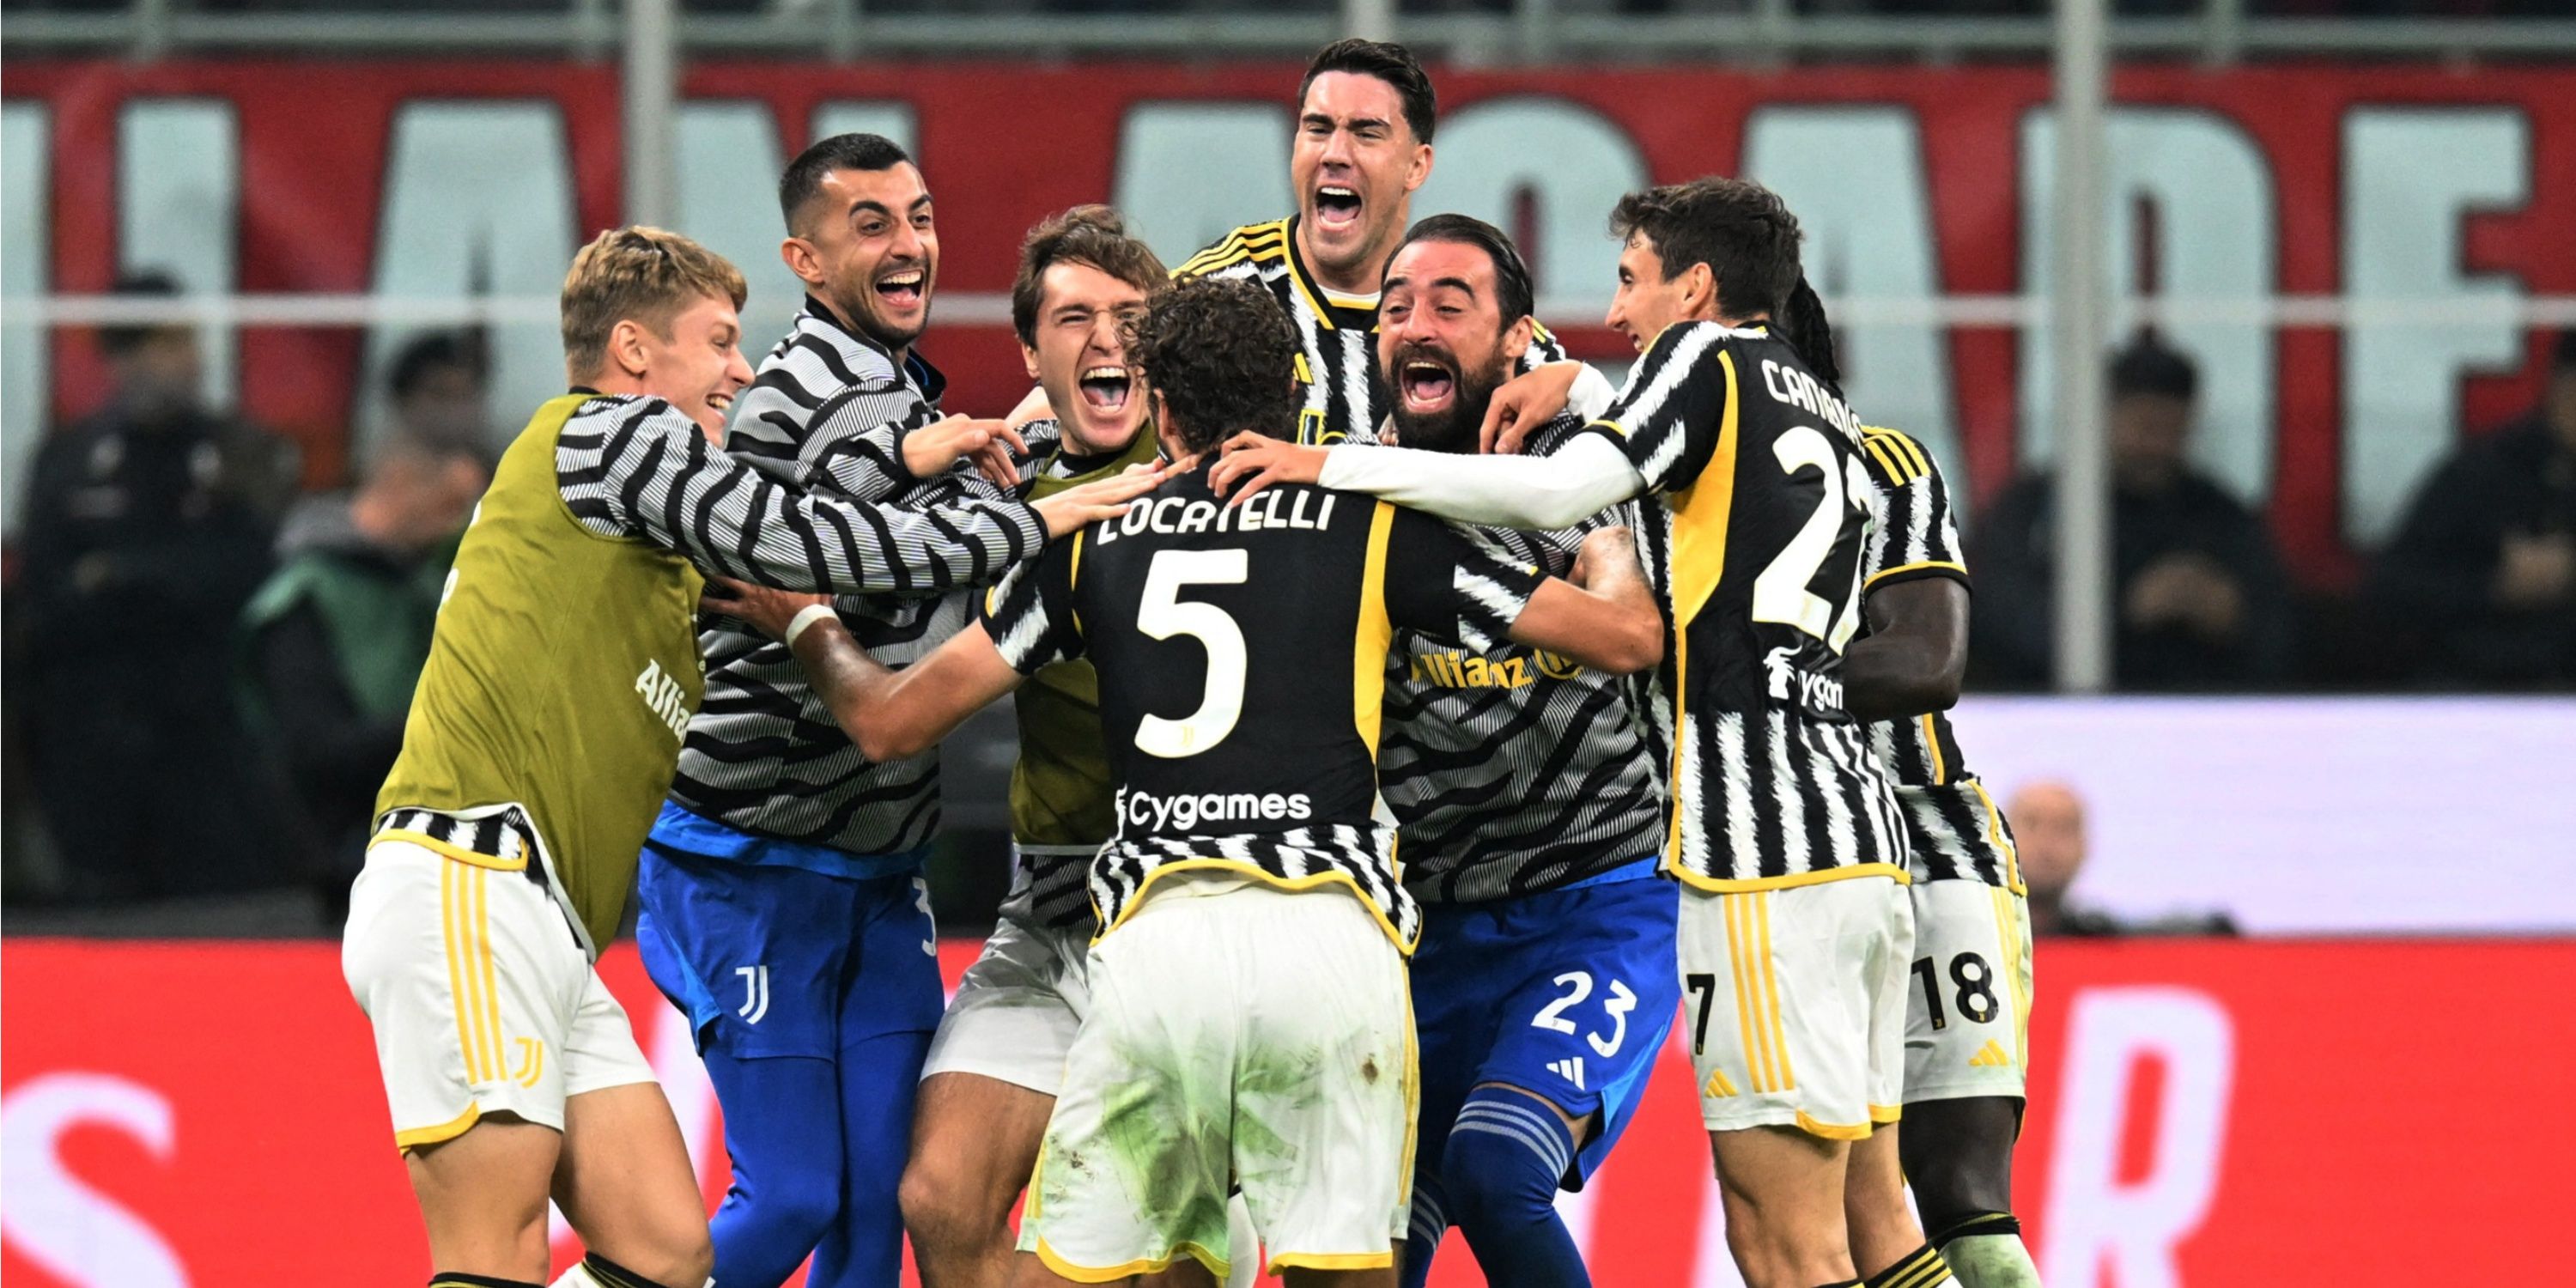 Manuel Locatelli celebrates for Juventus